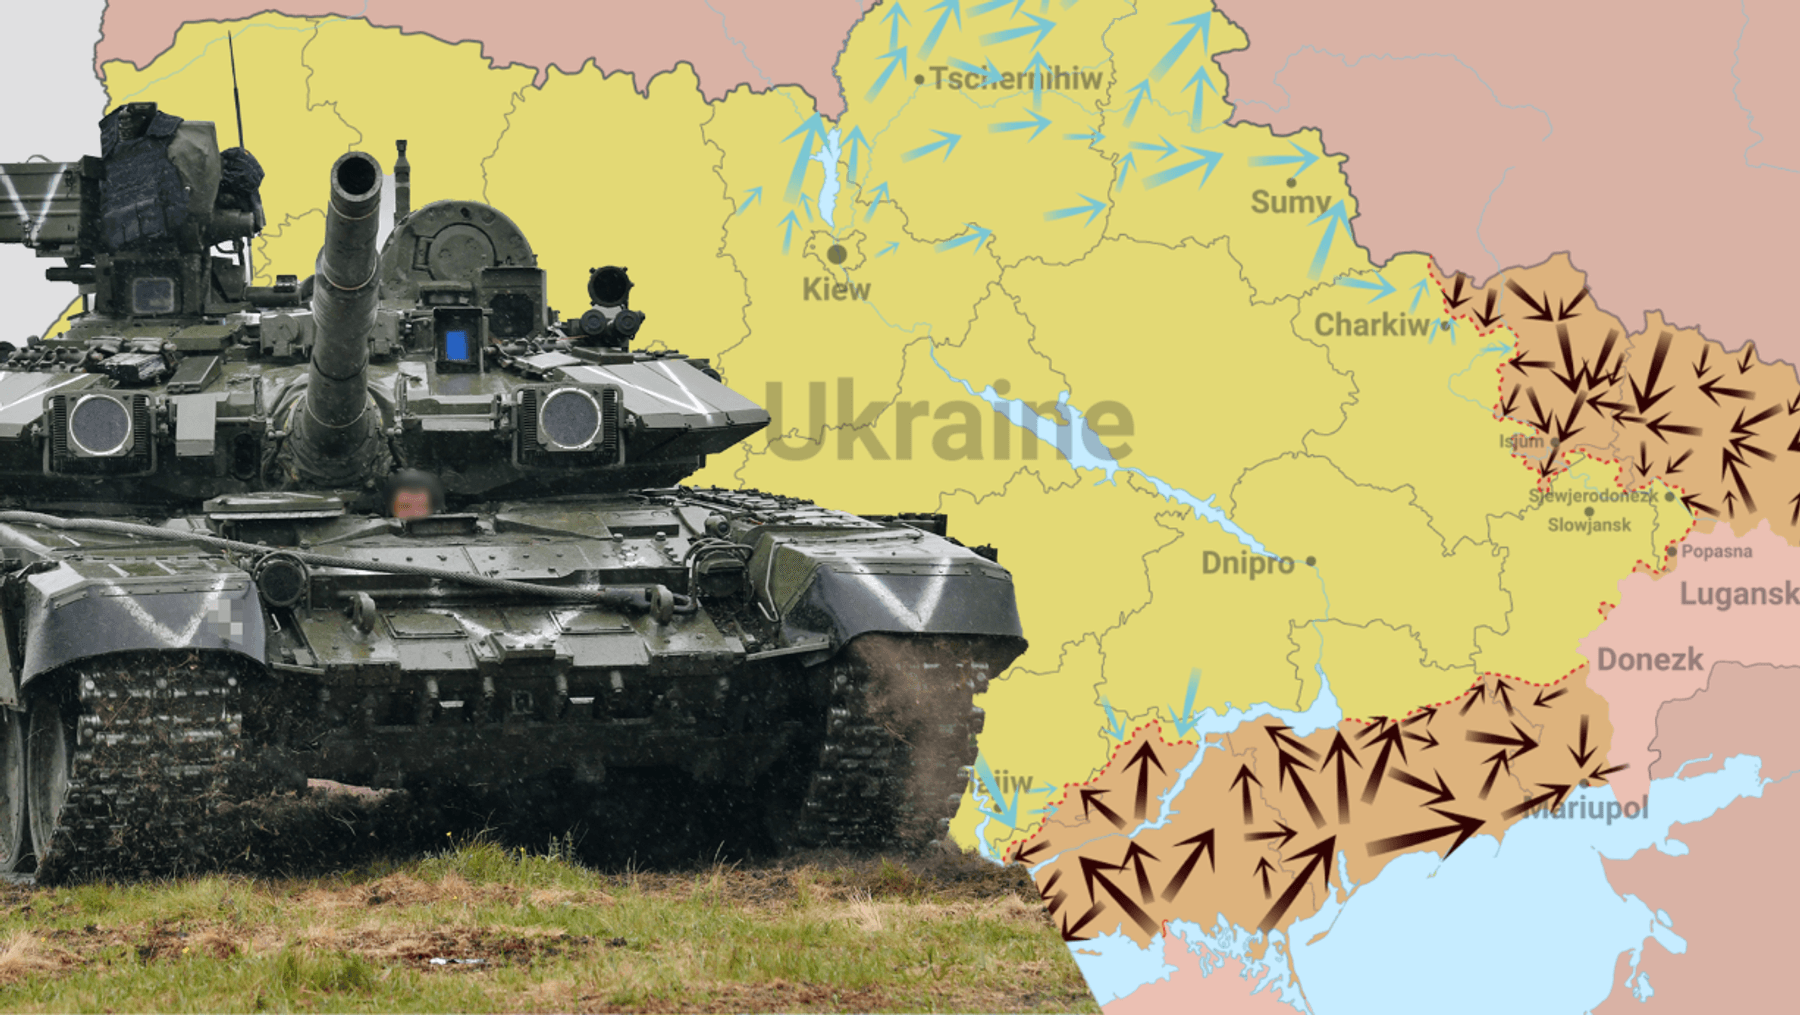 + Noticias de la guerra de Ucrania + Kyiv pausa negociaciones – esperando armas